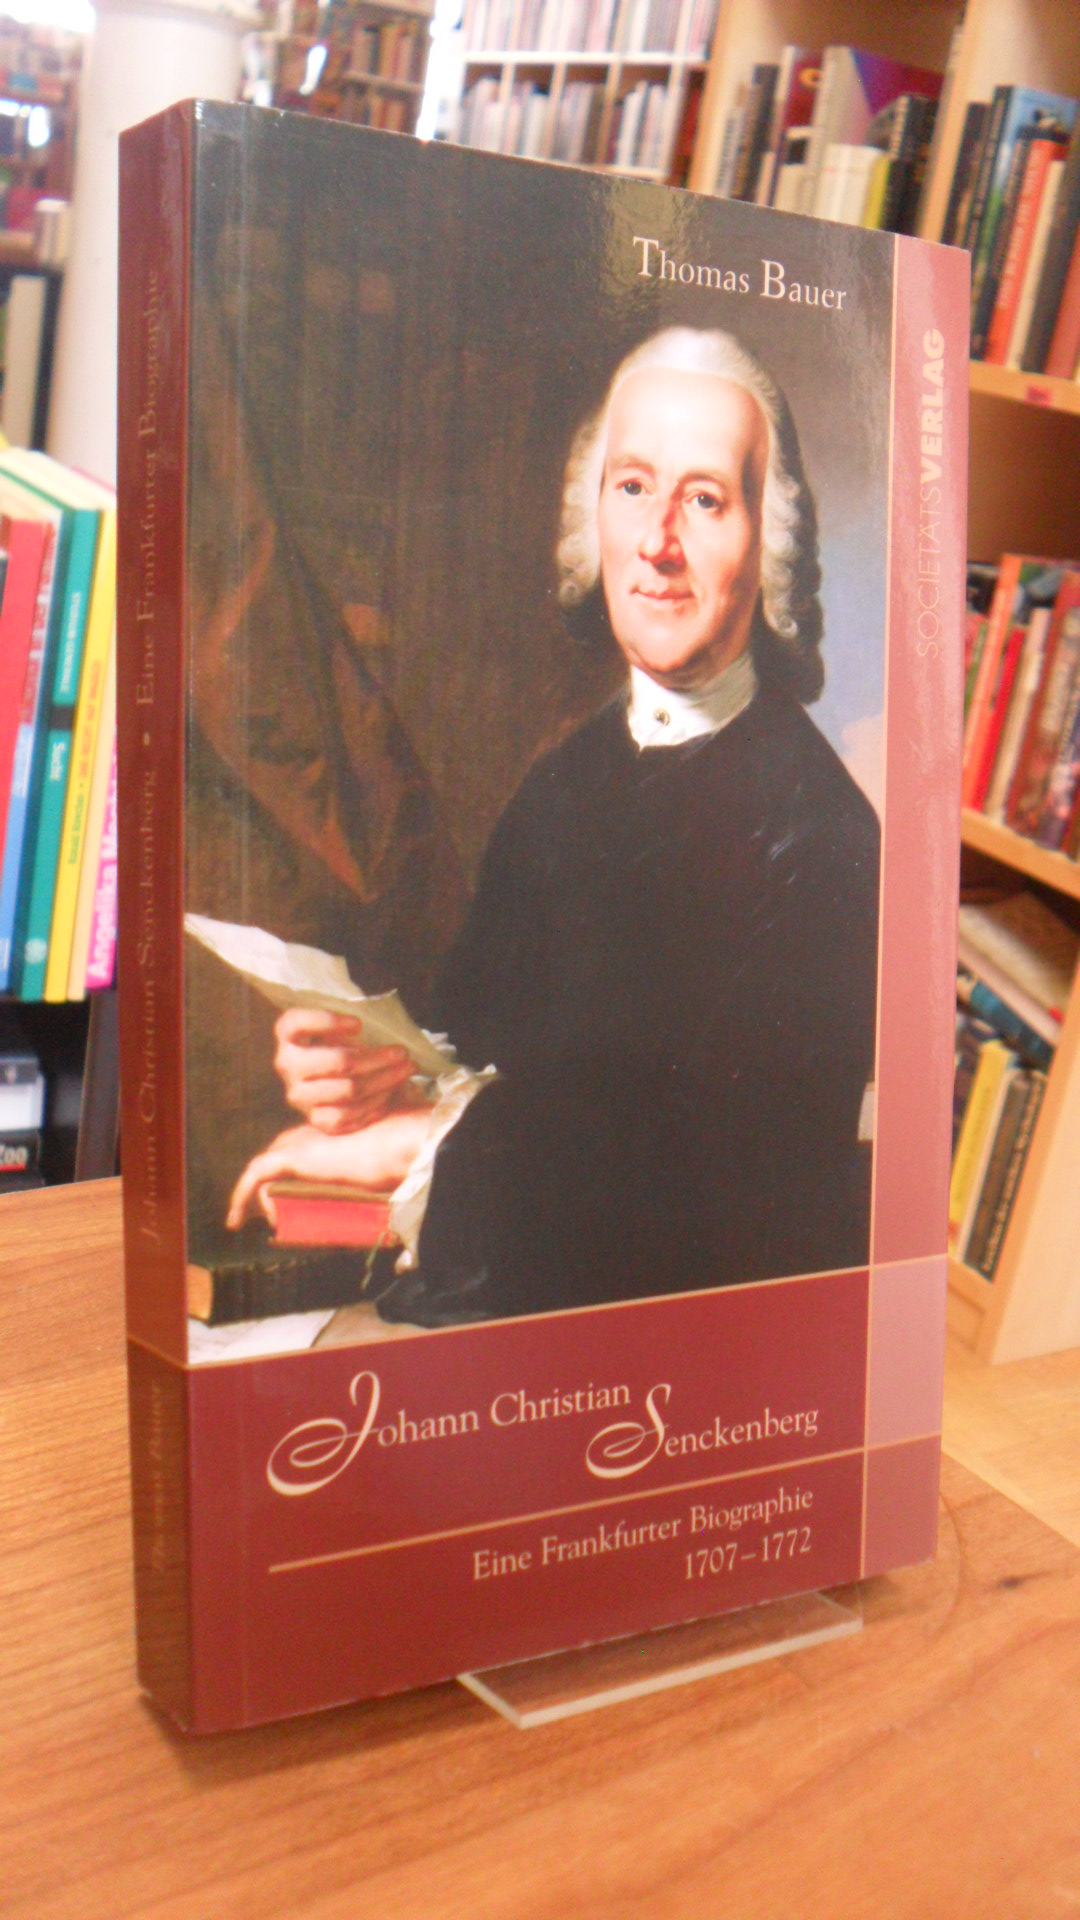 Bauer, Johann Christian Senckenberg – Eine Frankfurter Biographie 1707 – 1772,